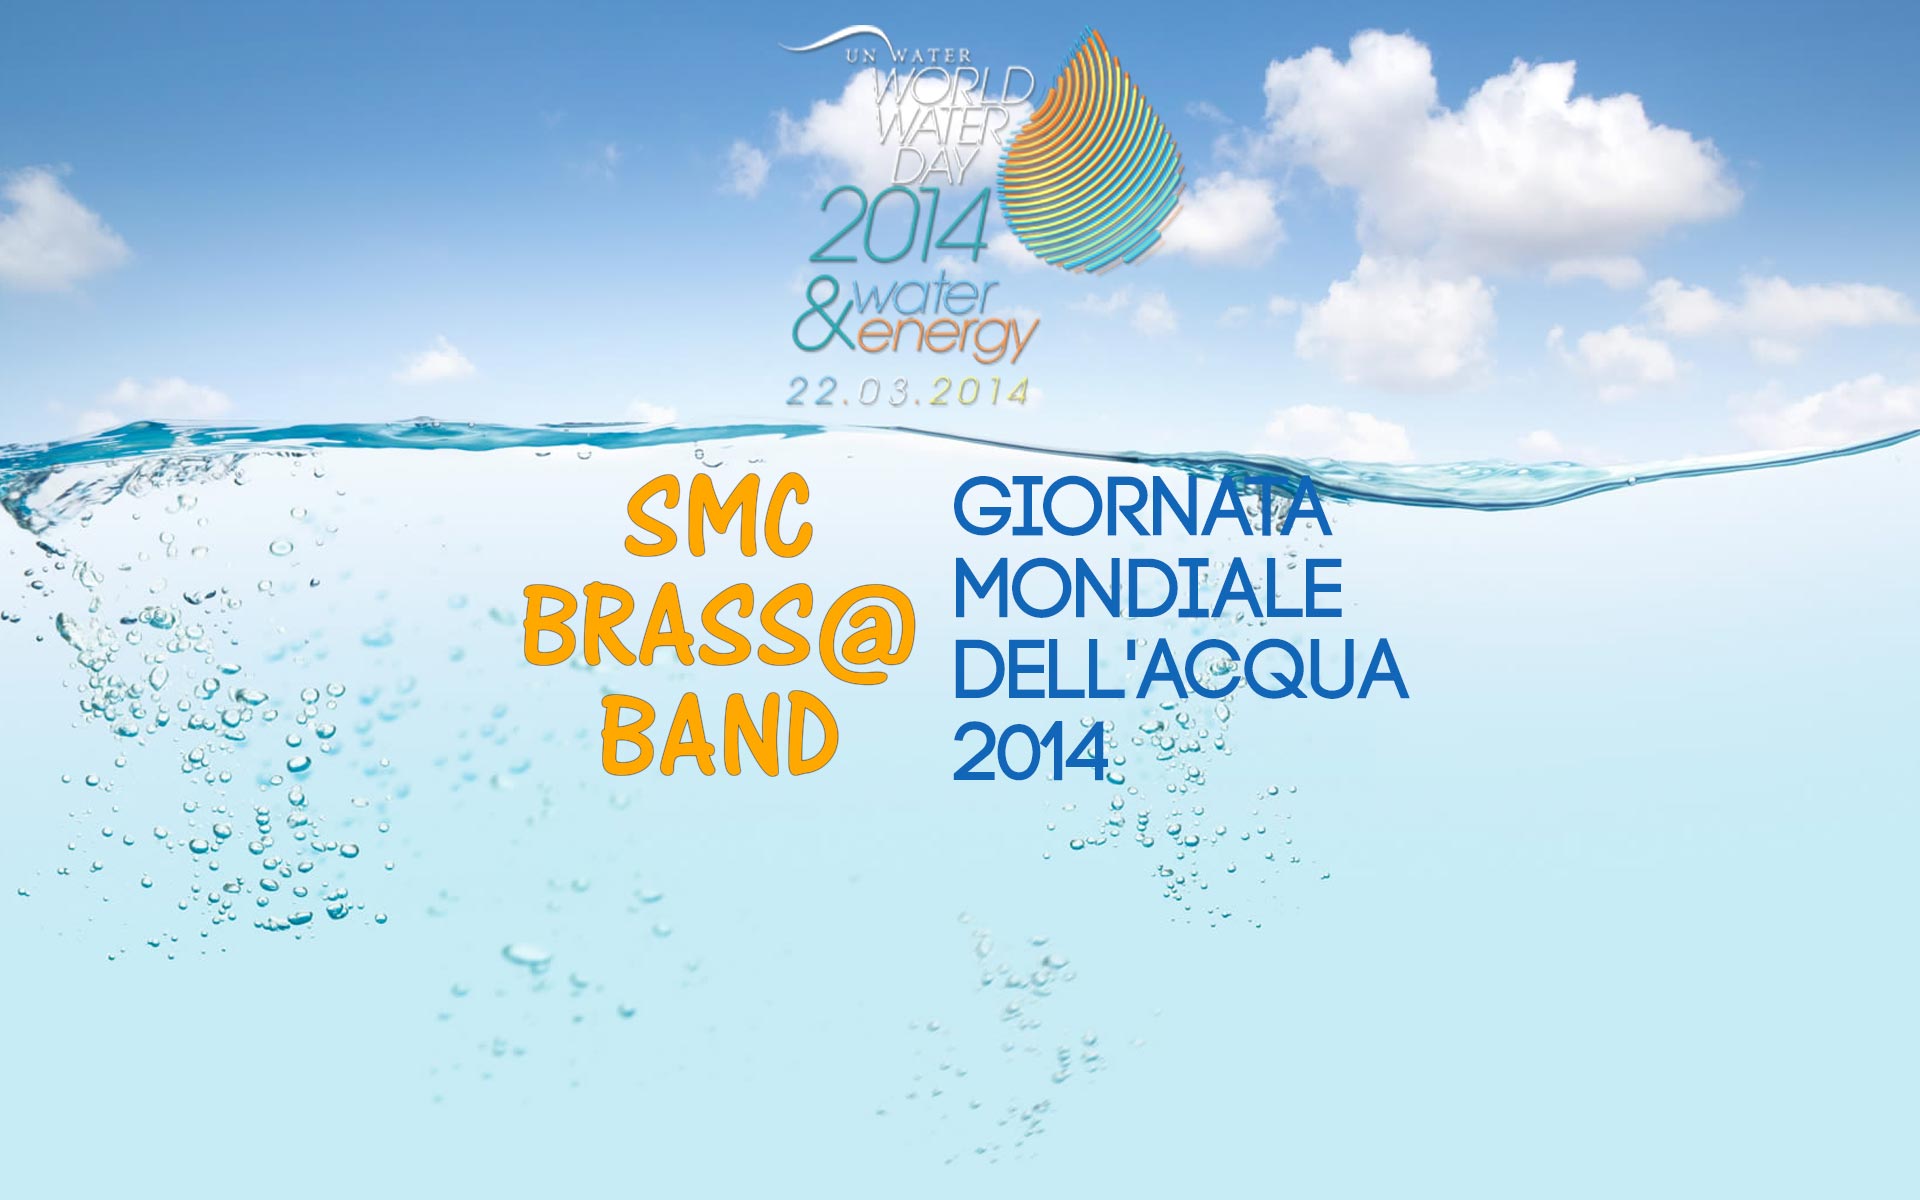 Brass Band Smc per La Giornata Mondiale dell'Acqua 2014 all'Anconella